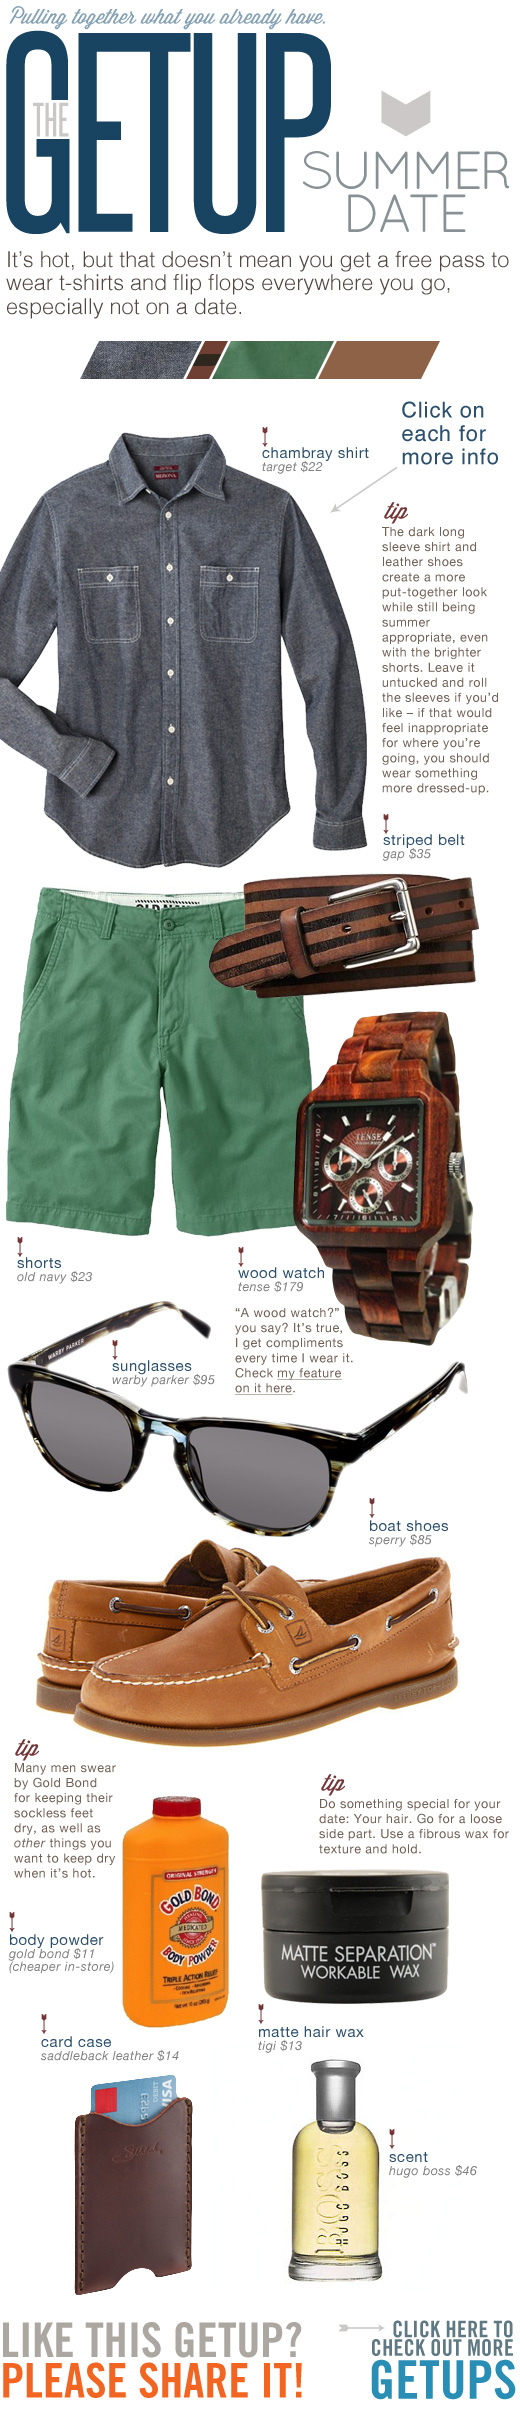 Getup Summer Date - Blue Shirt, Green Shorts, wooden watch, sunglasses